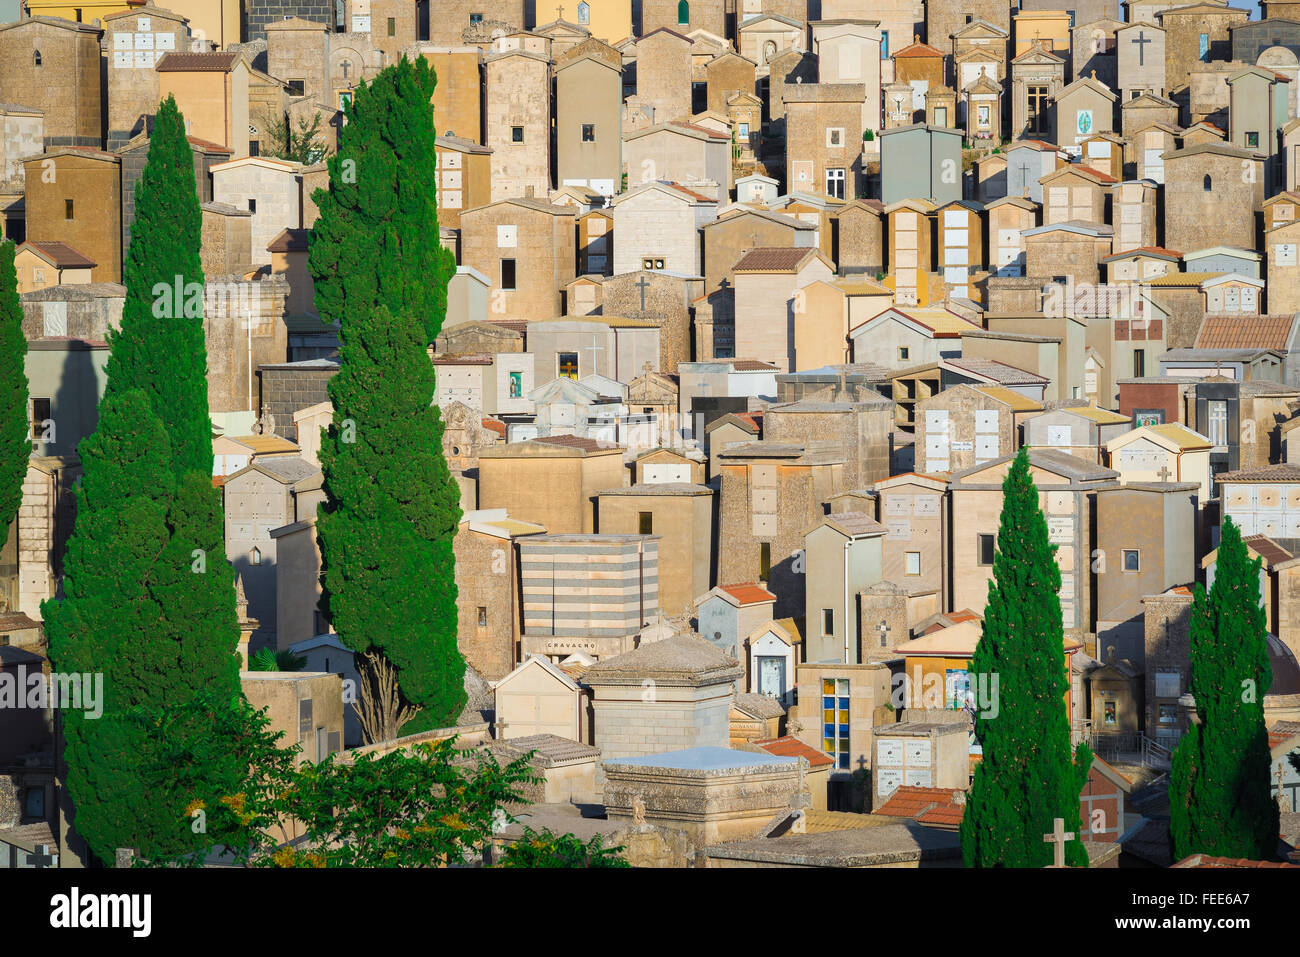 Plein de cimetière, vue d'un cimetière hillside bondé à la périphérie d'Enna en Sicile centrale. Banque D'Images